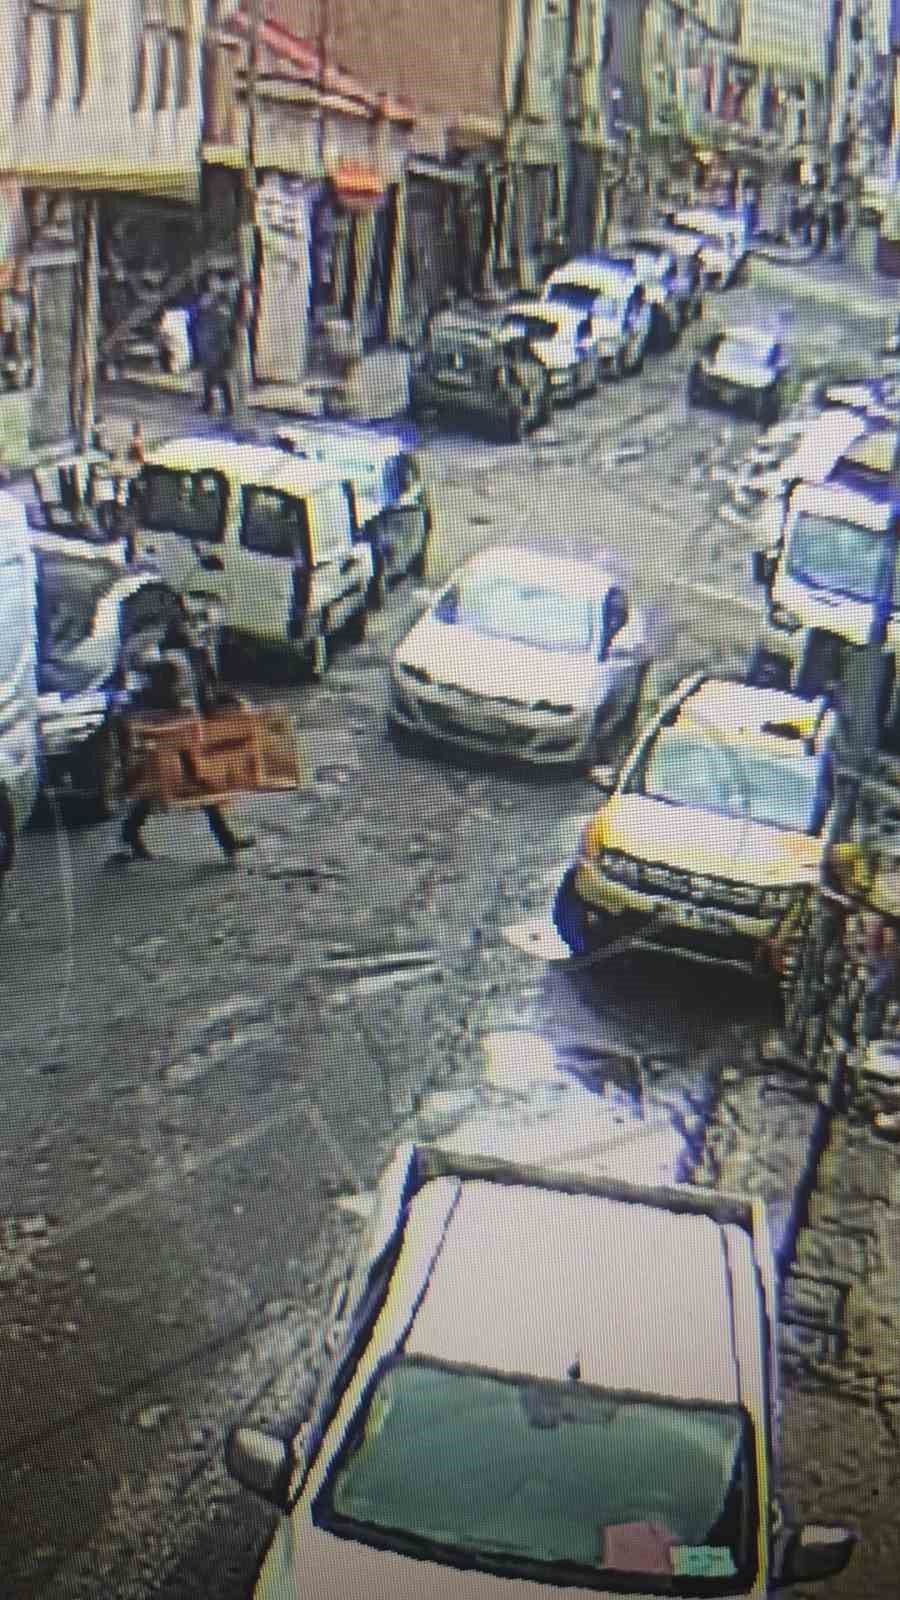 Kars polisi 140 saatlik görüntü izledi, hırsızları yakaladı
